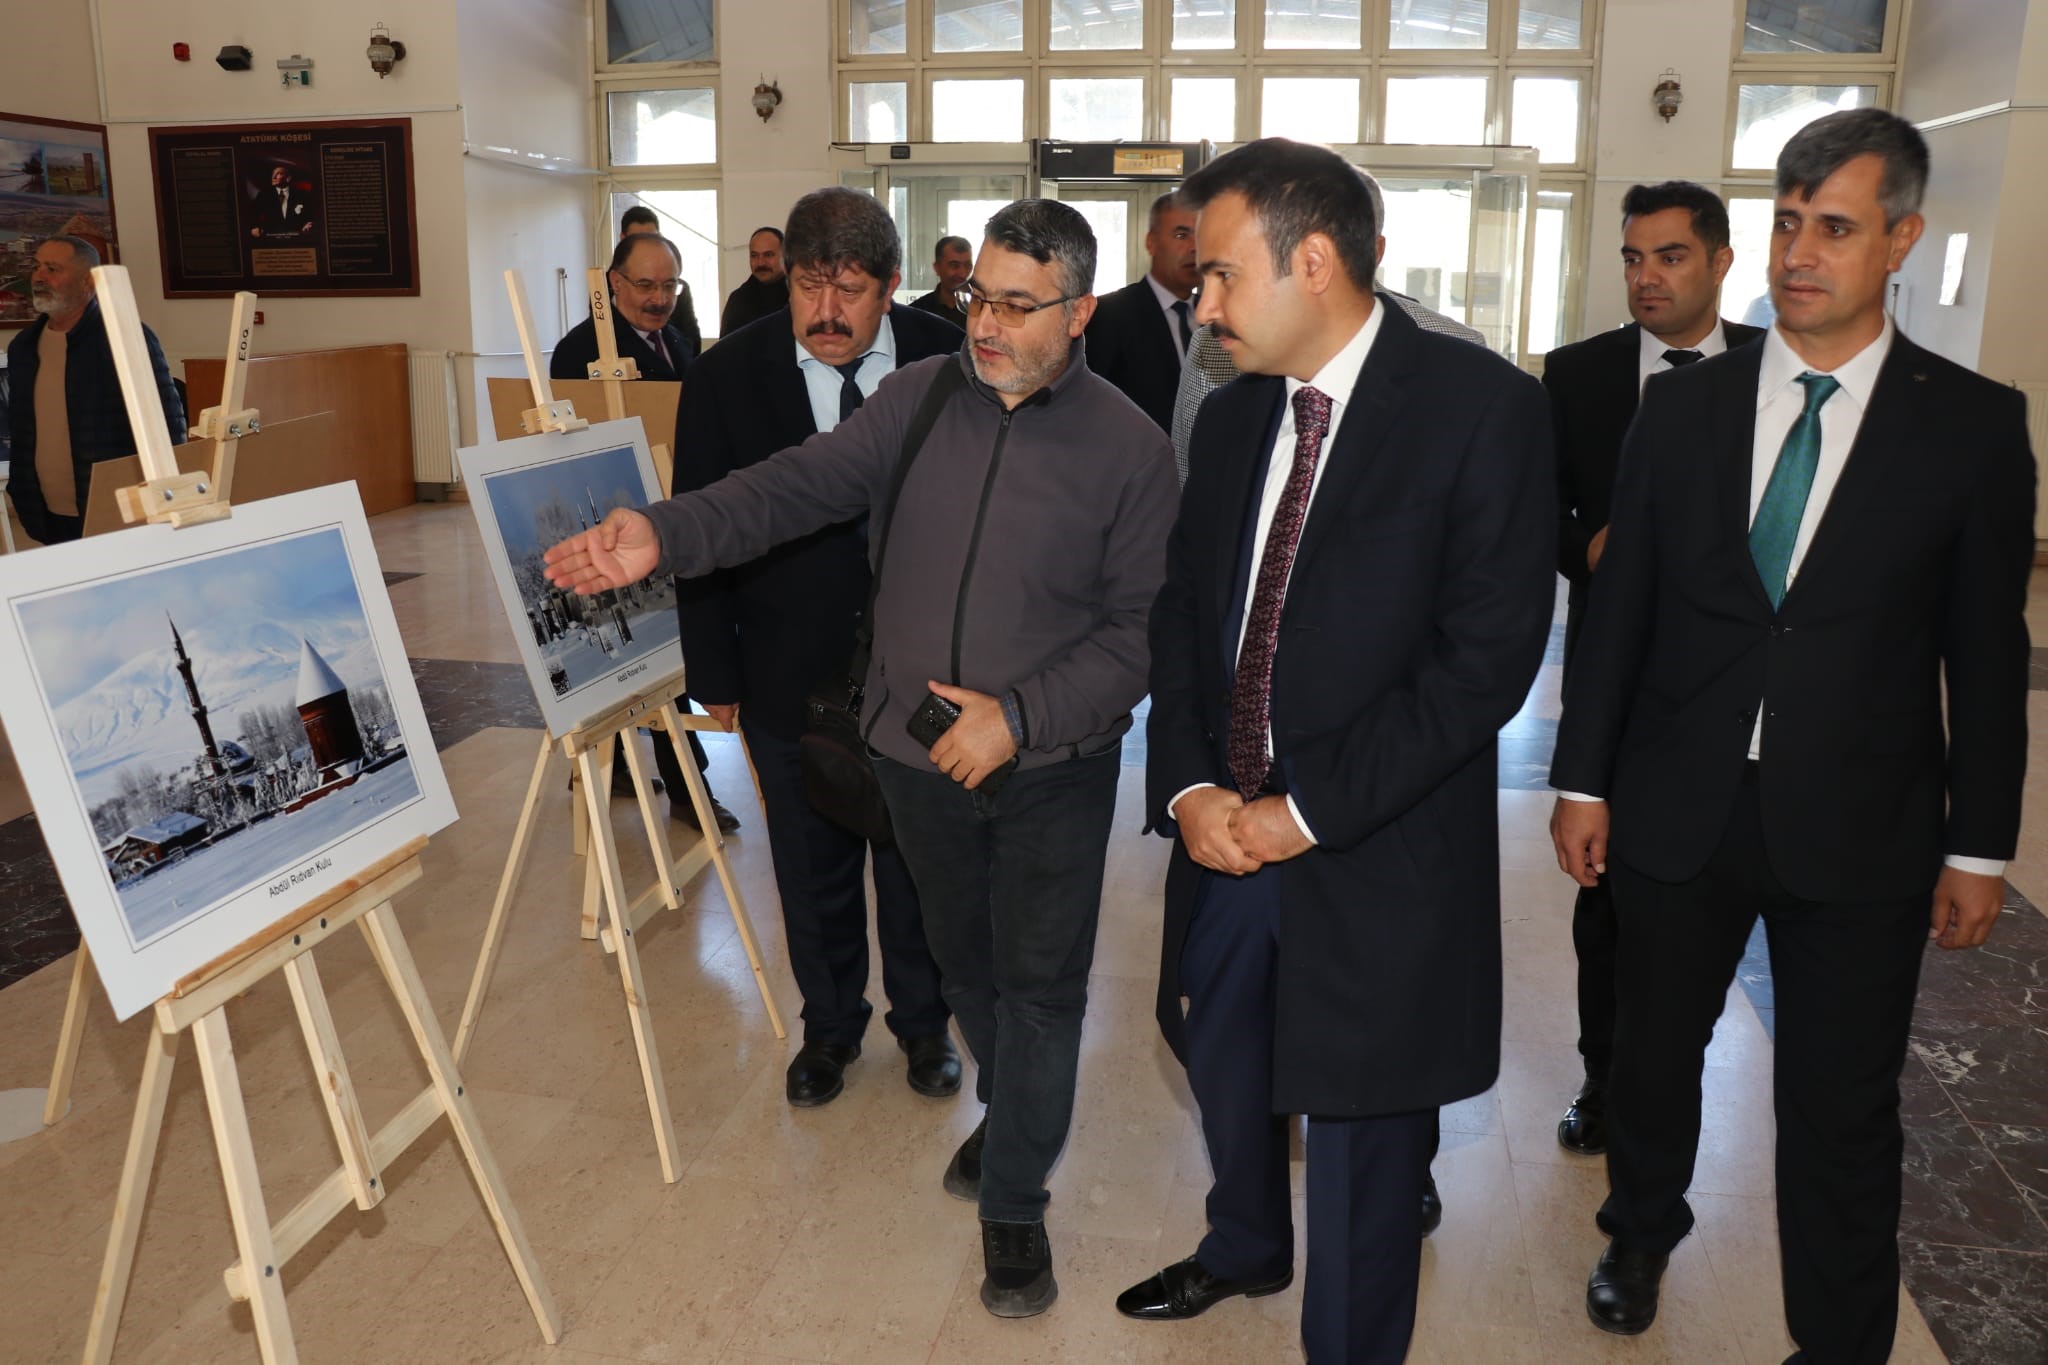 Bitlis'in Ahlat ilçesinde 'Her Yönüyle Ahlat' fotoğraf sergisi açıldı.